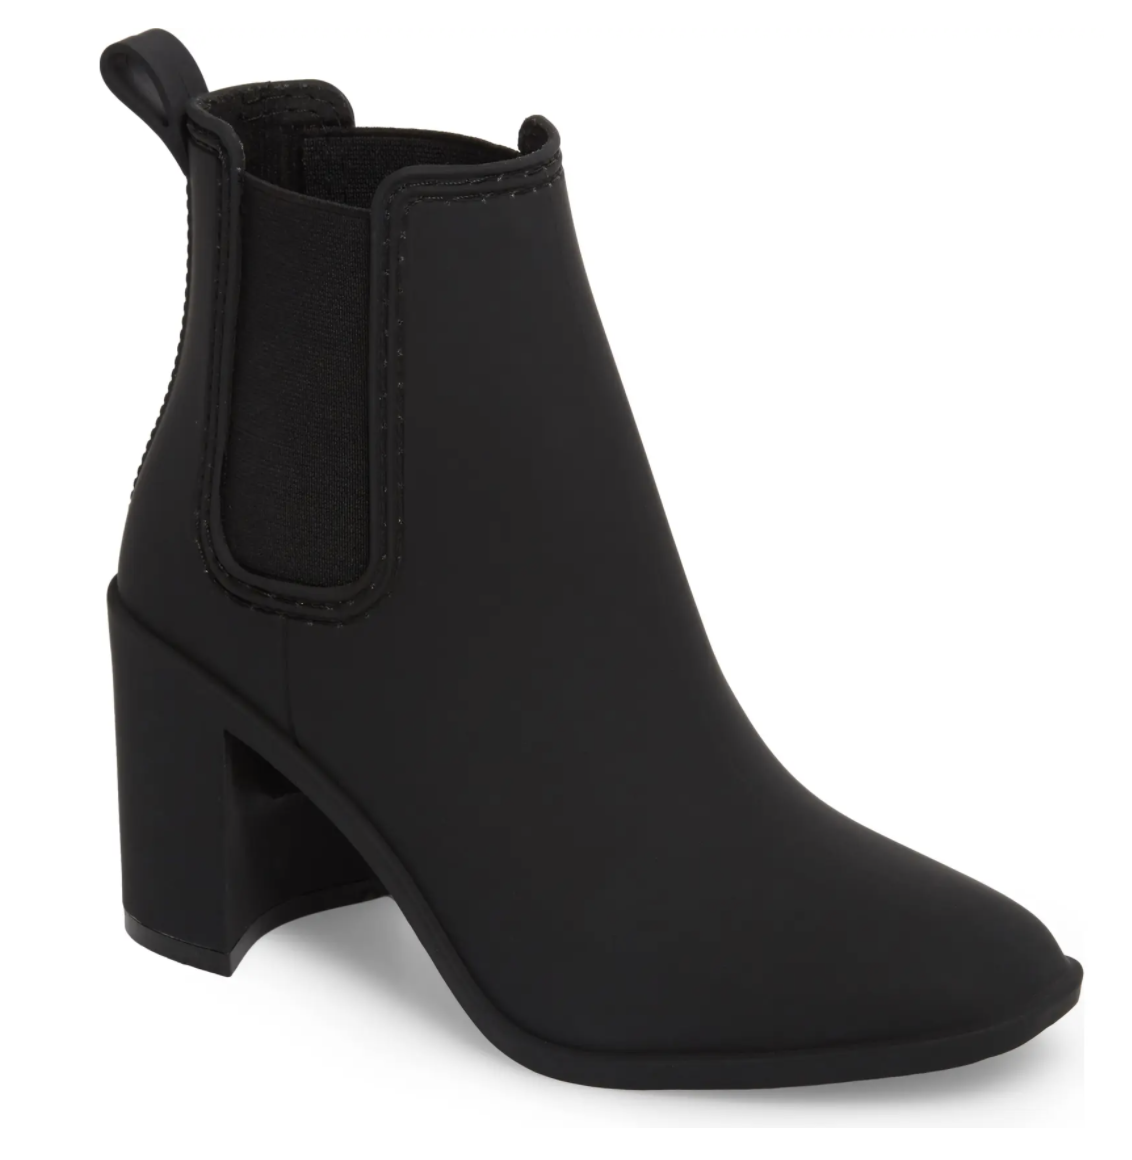 black waterproof boots women